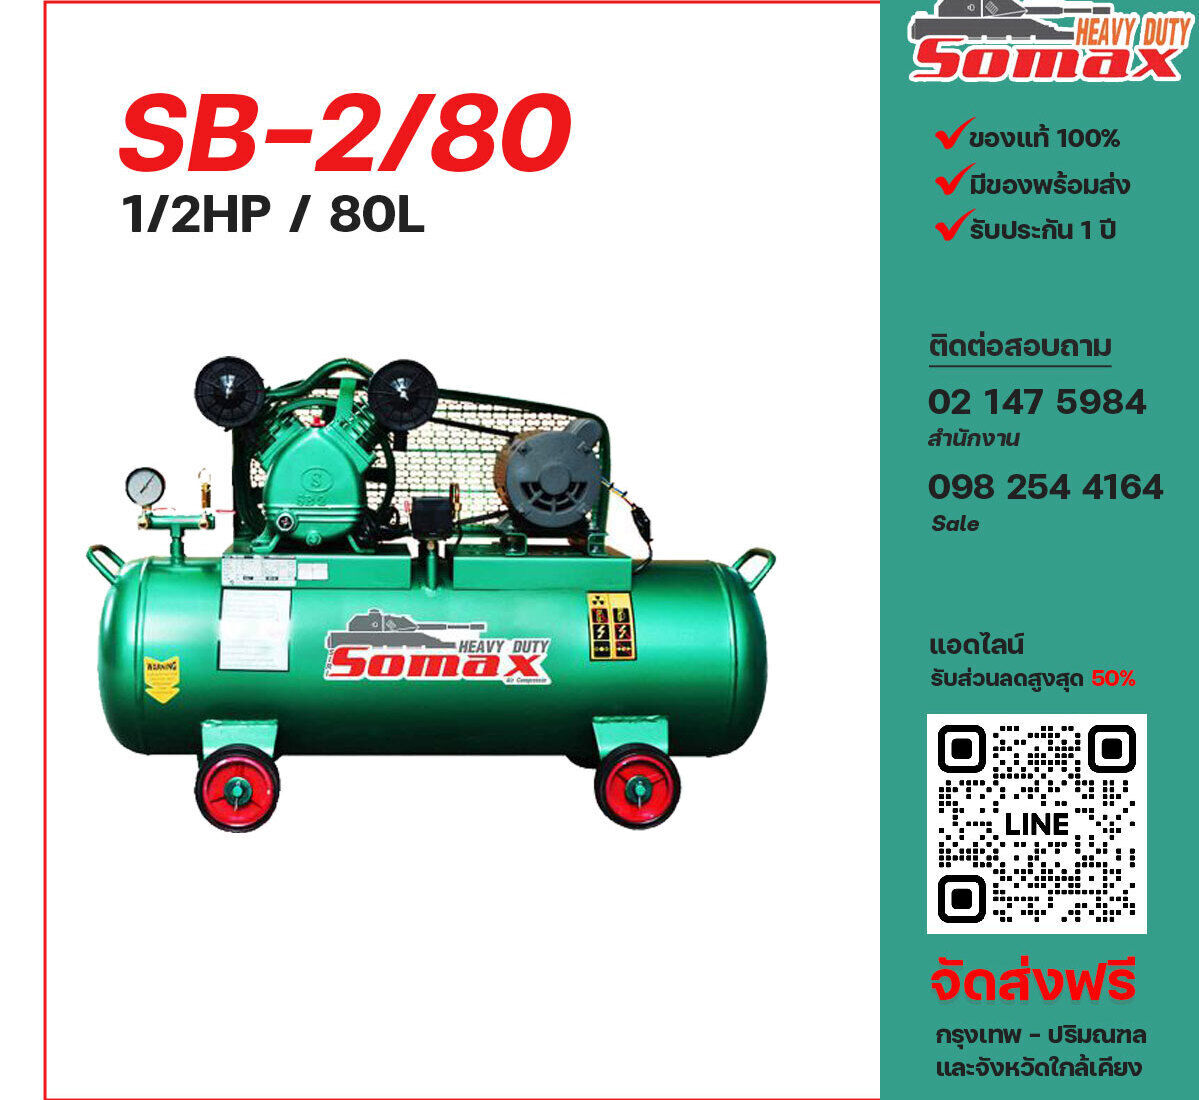 ปั๊มลมโซแม็กซ์ SOMAX SB-2/80 220V ปั๊มลมลูกสูบ ขนาด 2 สูบ 1/2 แรงม้า 80 ลิตร SOMAX พร้อมมอเตอร์ ไฟ 220V ส่งฟรี กรุงเทพฯ-ปริมณฑล รับประกัน 1 ปี